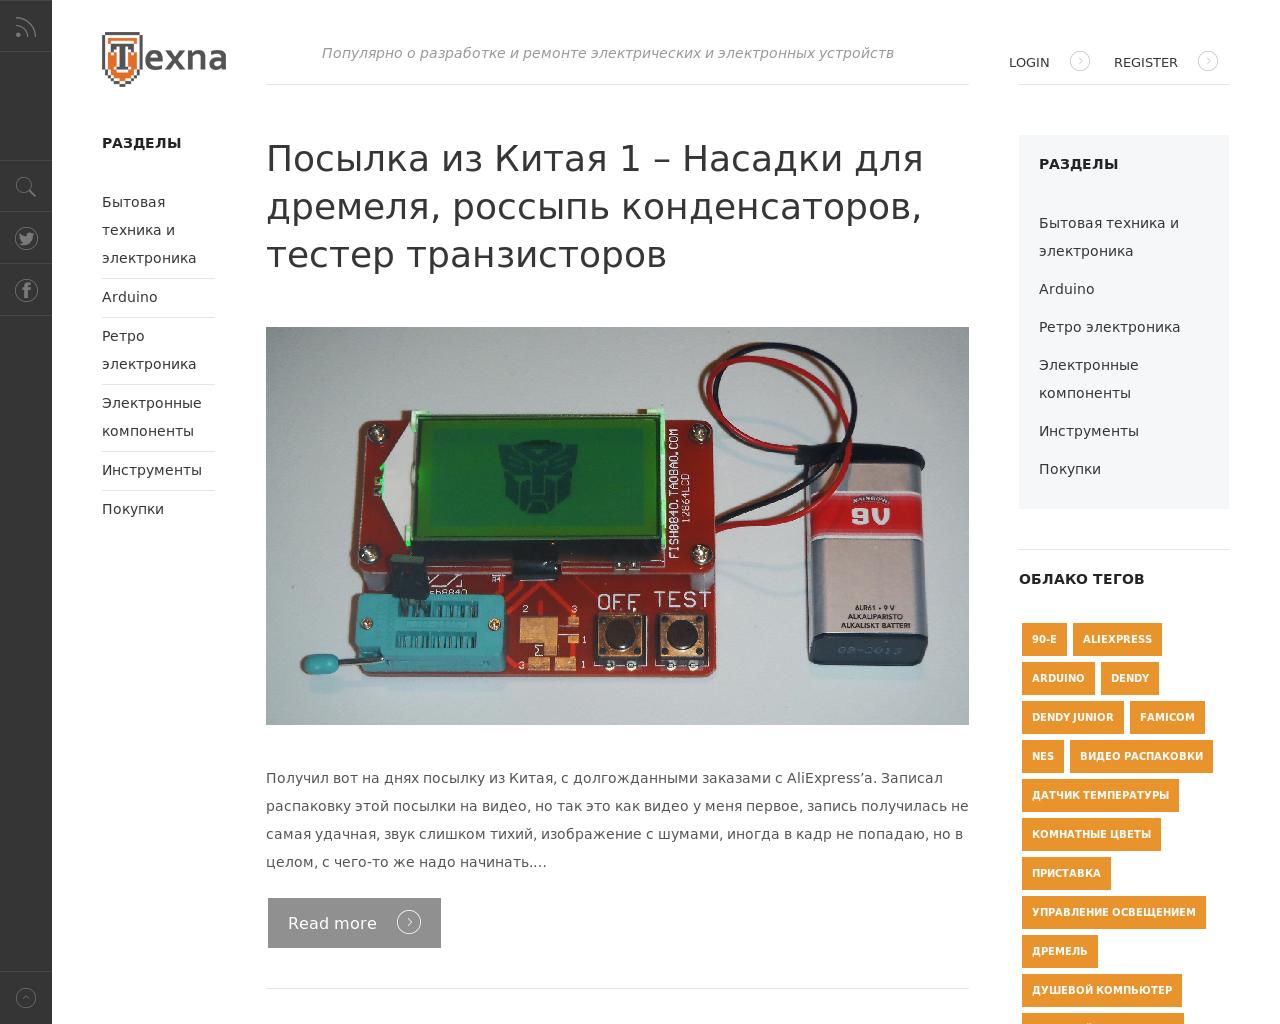 Изображение сайта texna.ru в разрешении 1280x1024